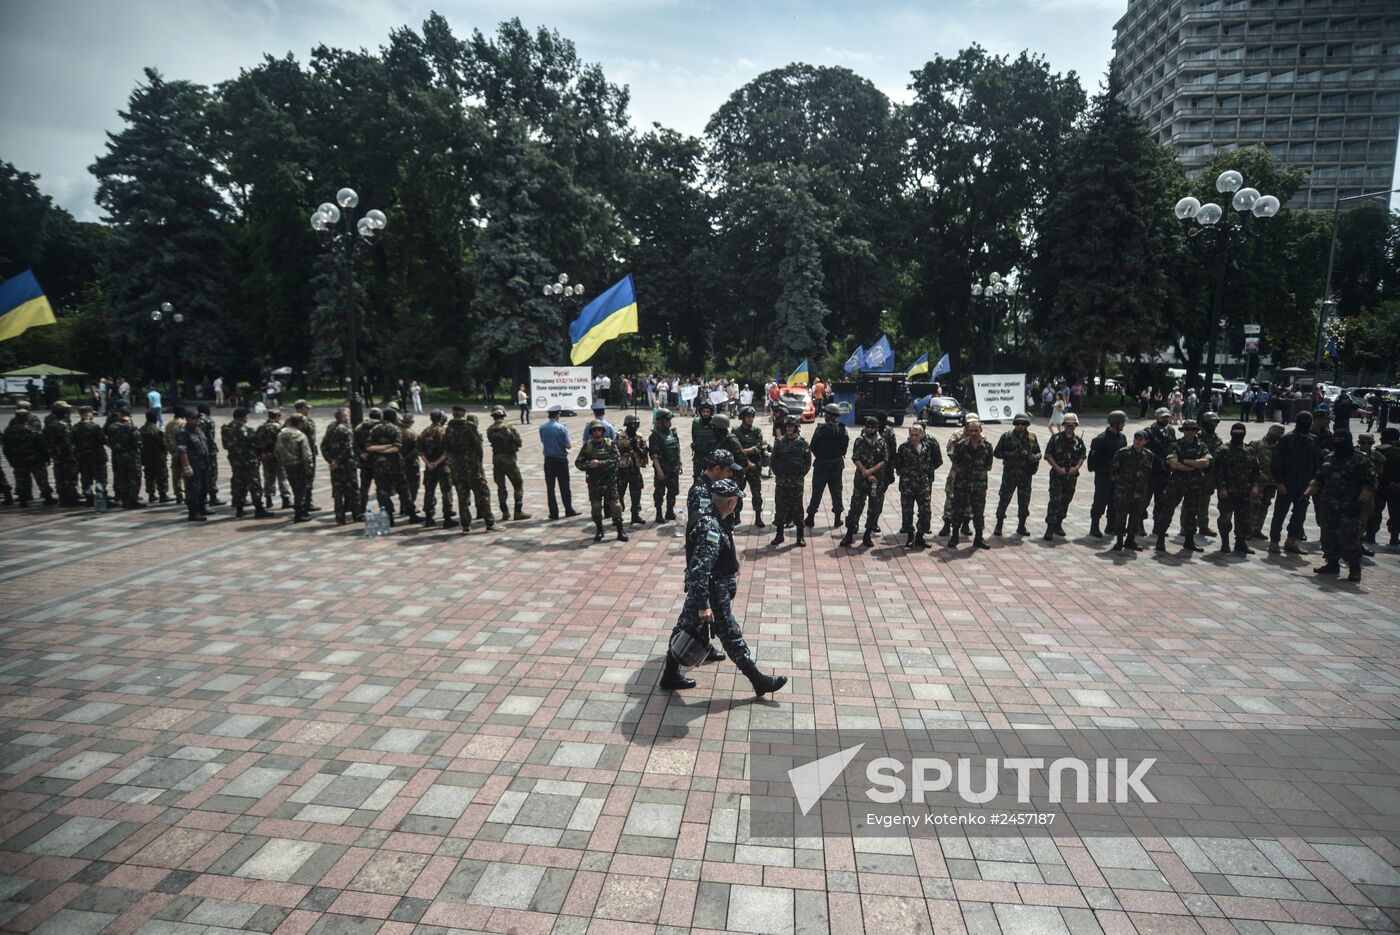 Toughening security measures by Verkhovna Rada in Kiev